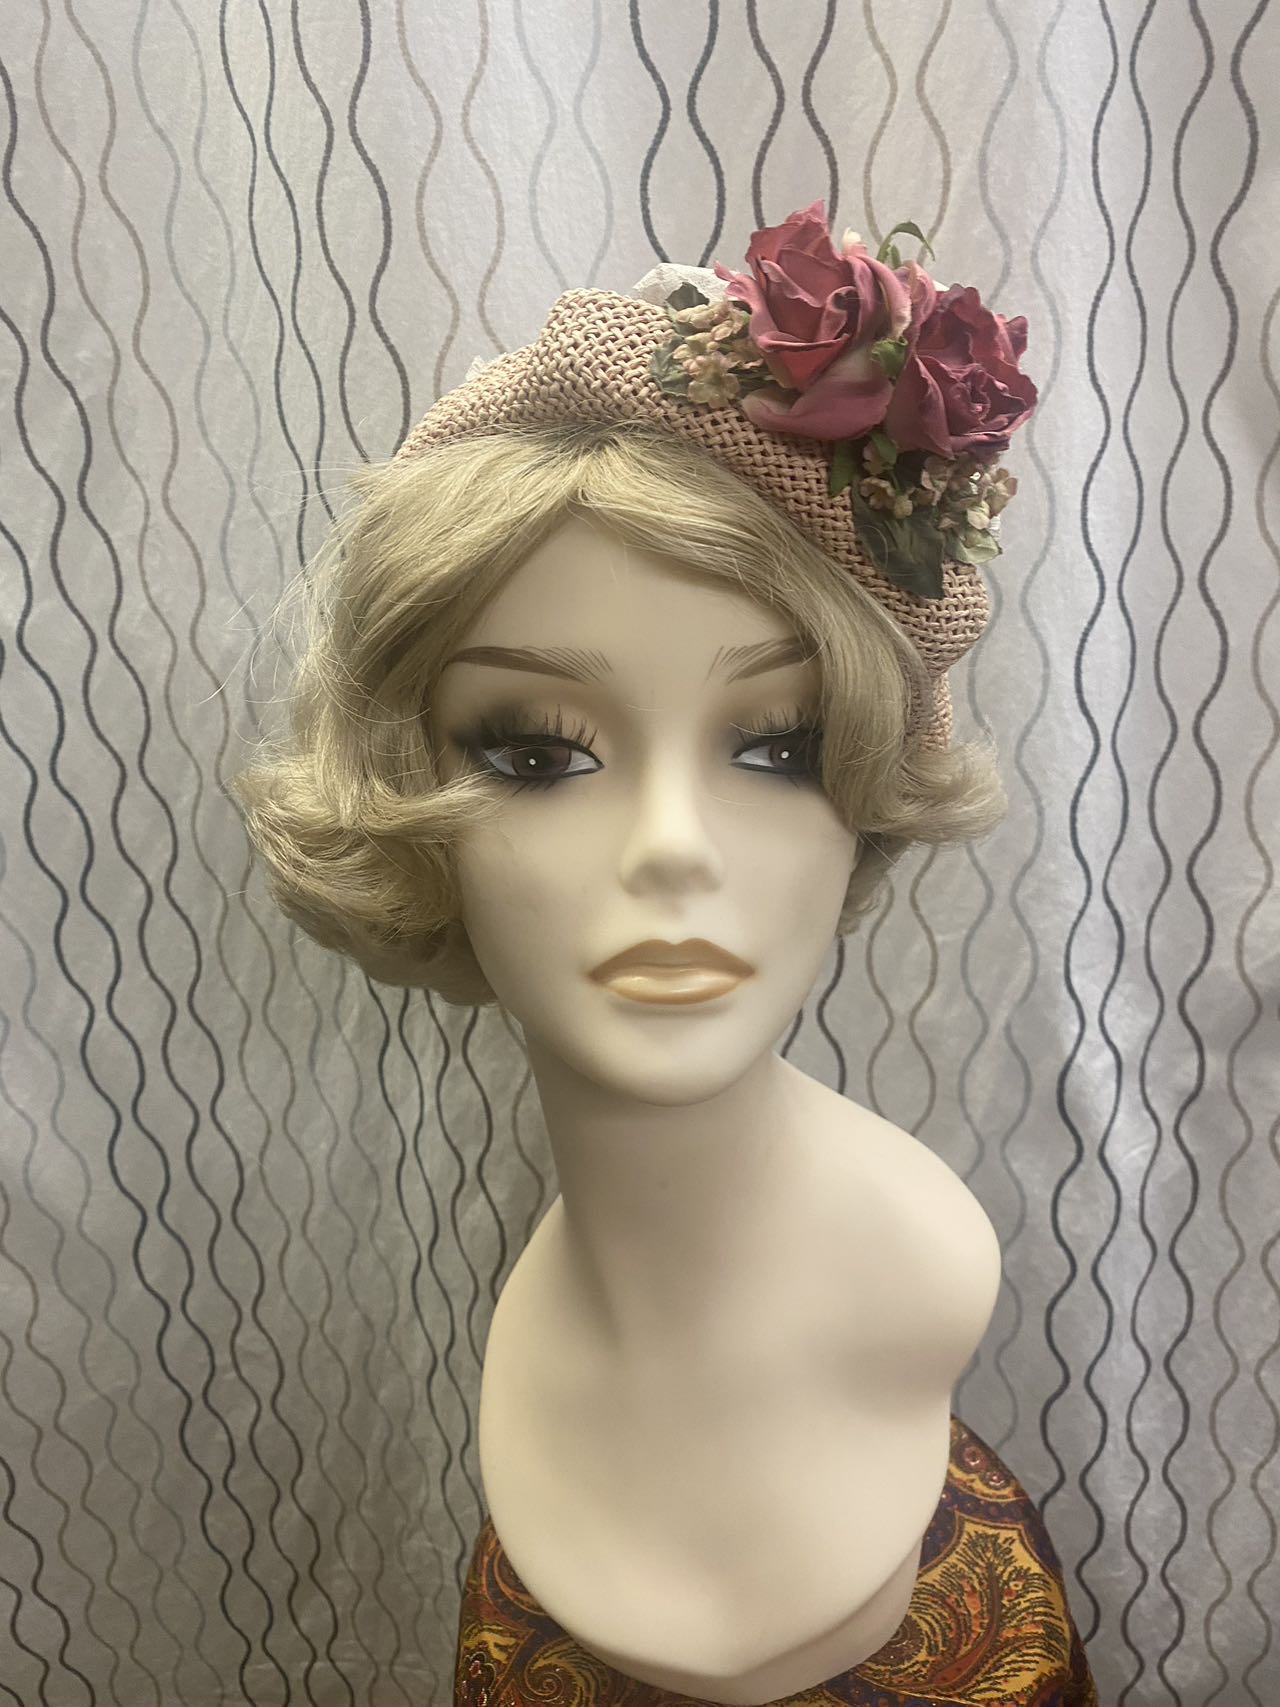 1920s women crochet straw hat with flower